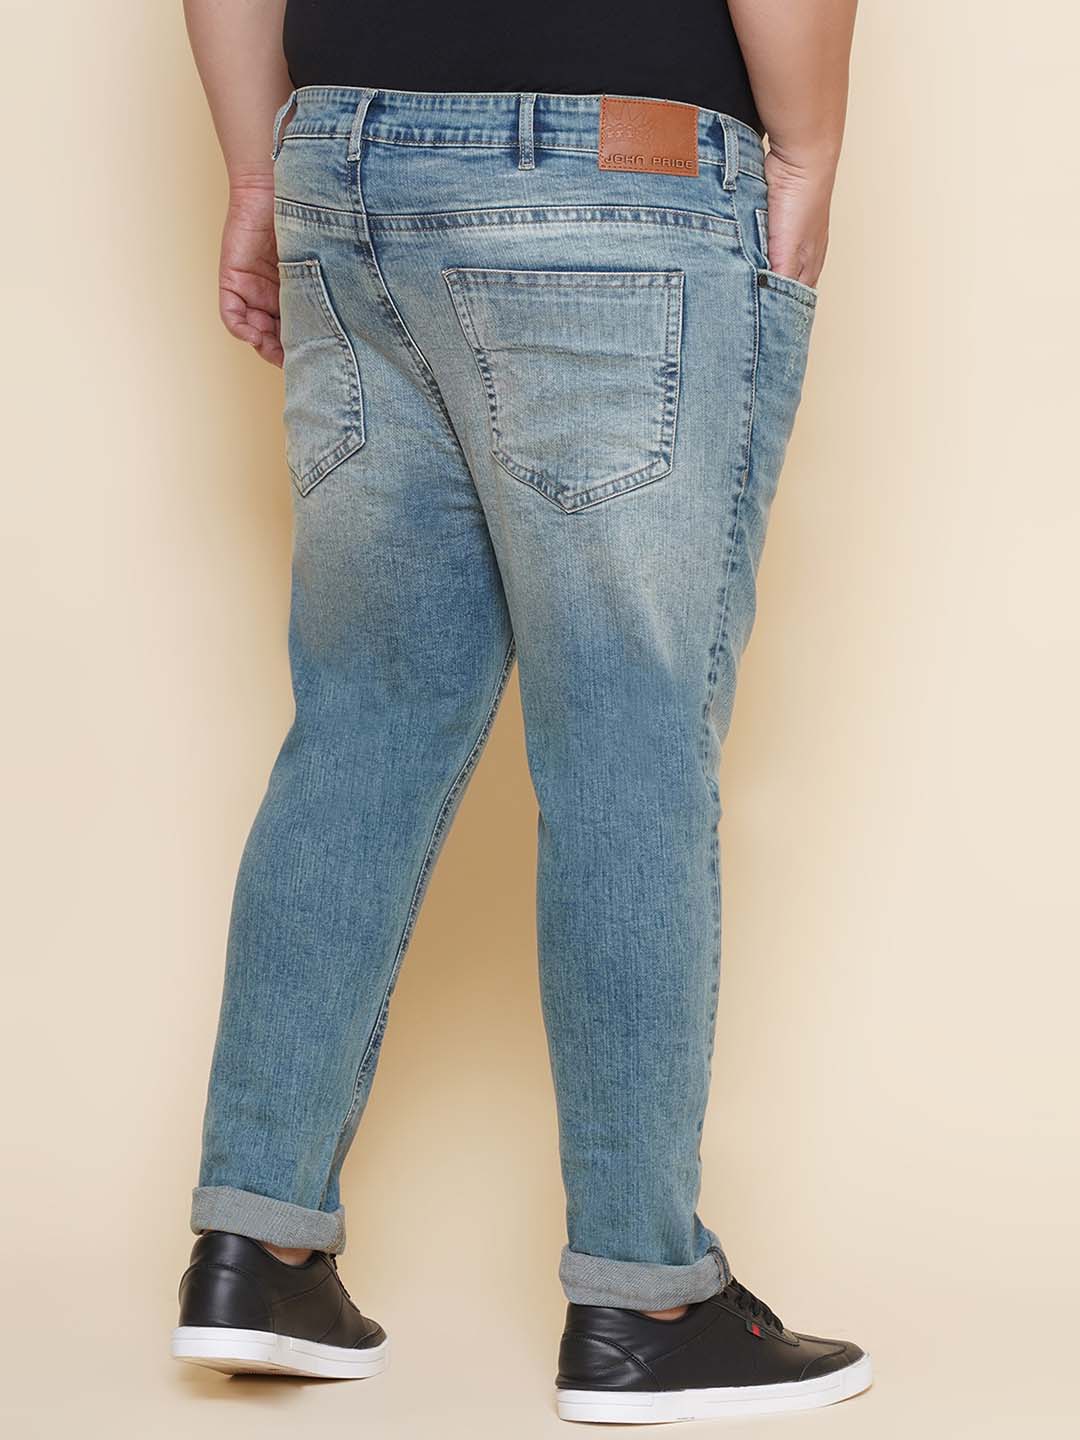 bottomwear/jeans/JPJ27107/jpj27107-5.jpg